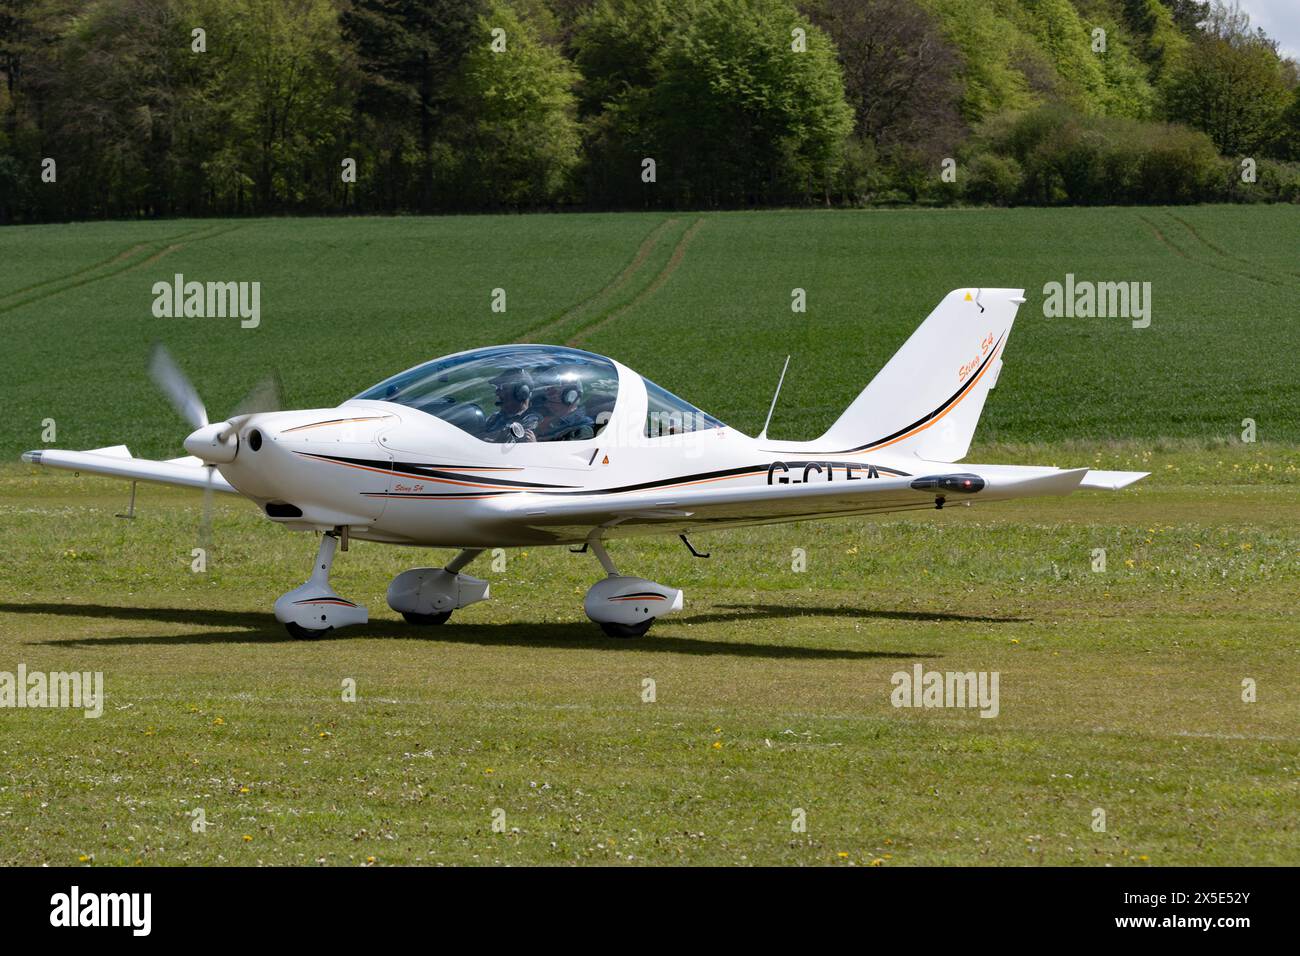 L'avion ultraléger TL Sport Sting S4 au look élégant G-CLFA arrive à l'aérodrome de Popham dans le Hampshire pour assister au vol annuel micro-léger. Banque D'Images